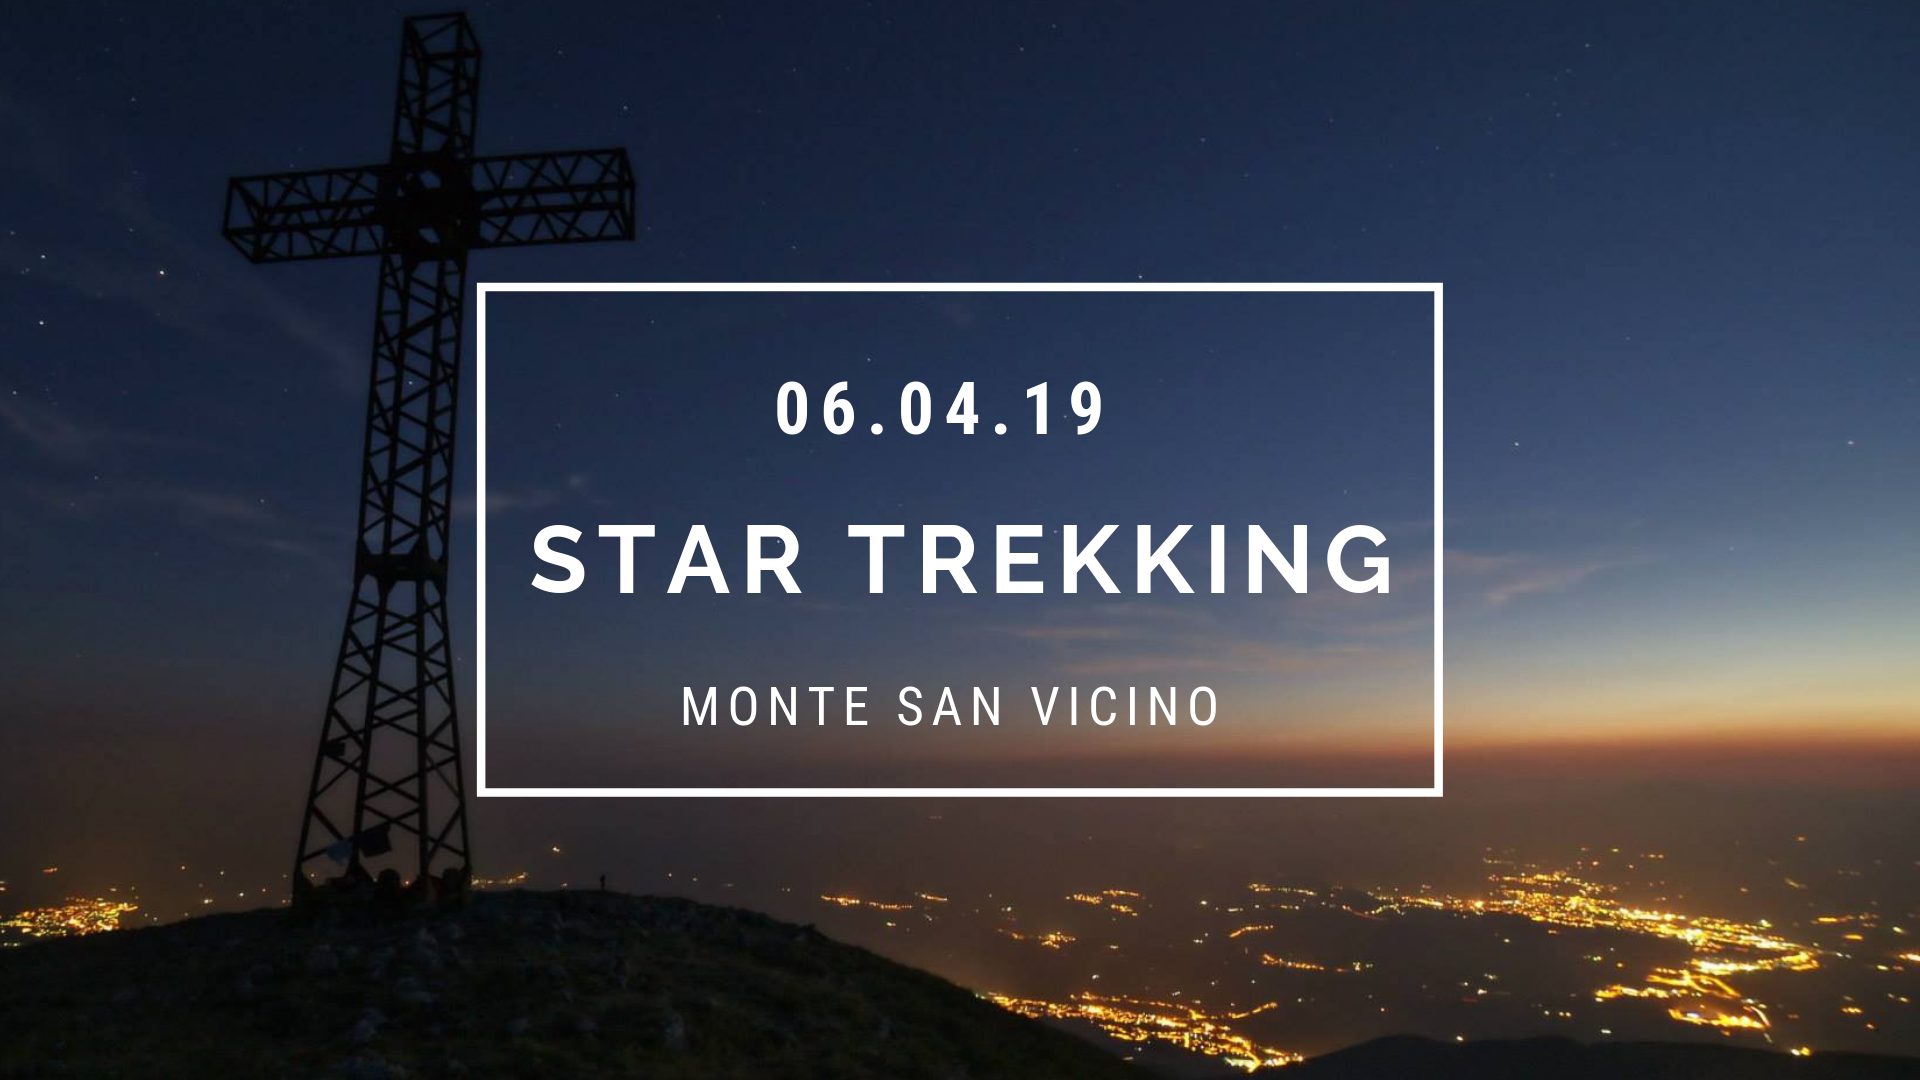 Star Trekking Monte San Vicino